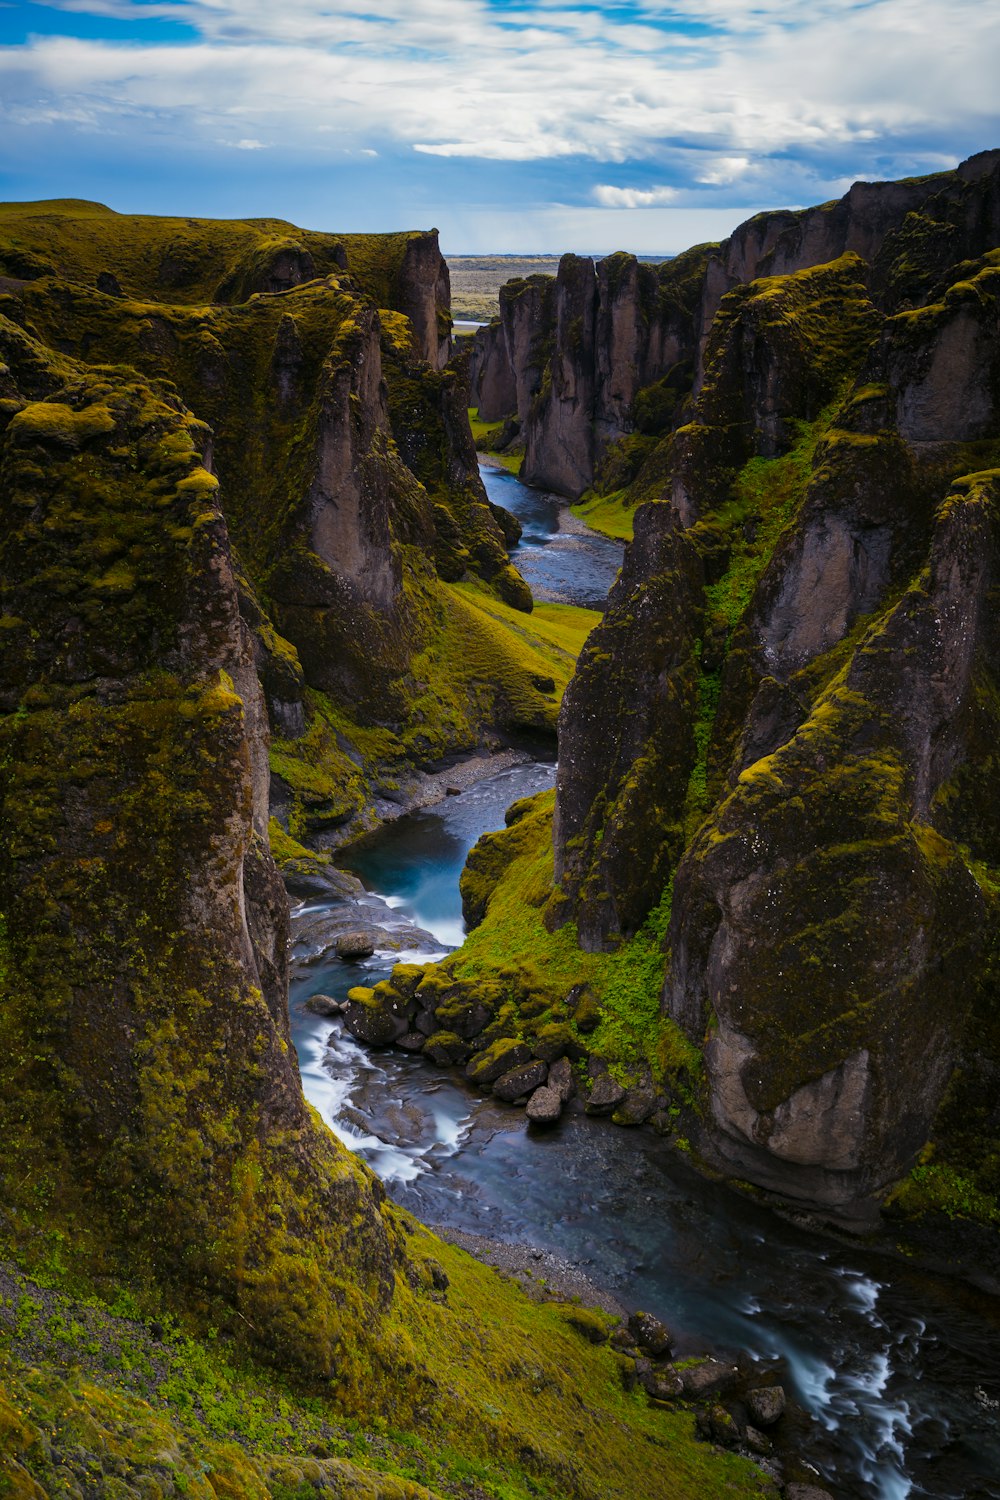 a river running through a rocky canyon